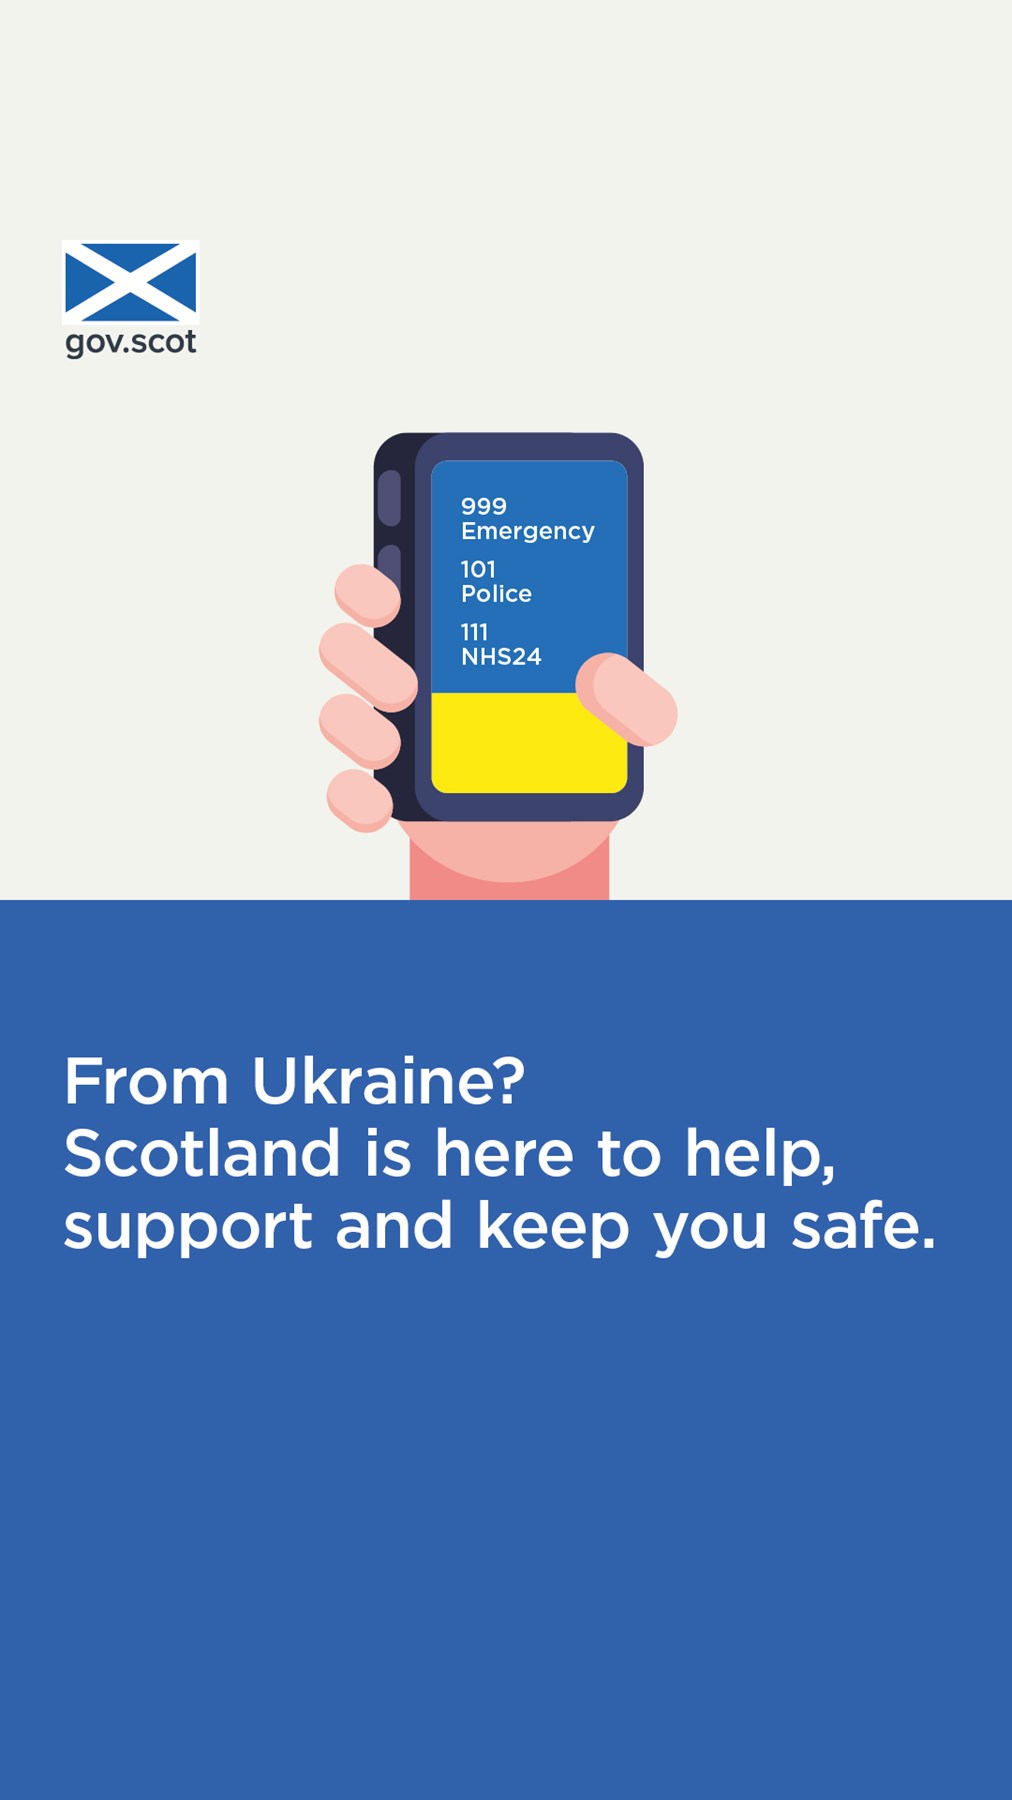 From Ukraine - Support - English -1080x1920 - Social - Ukraine Resettlement